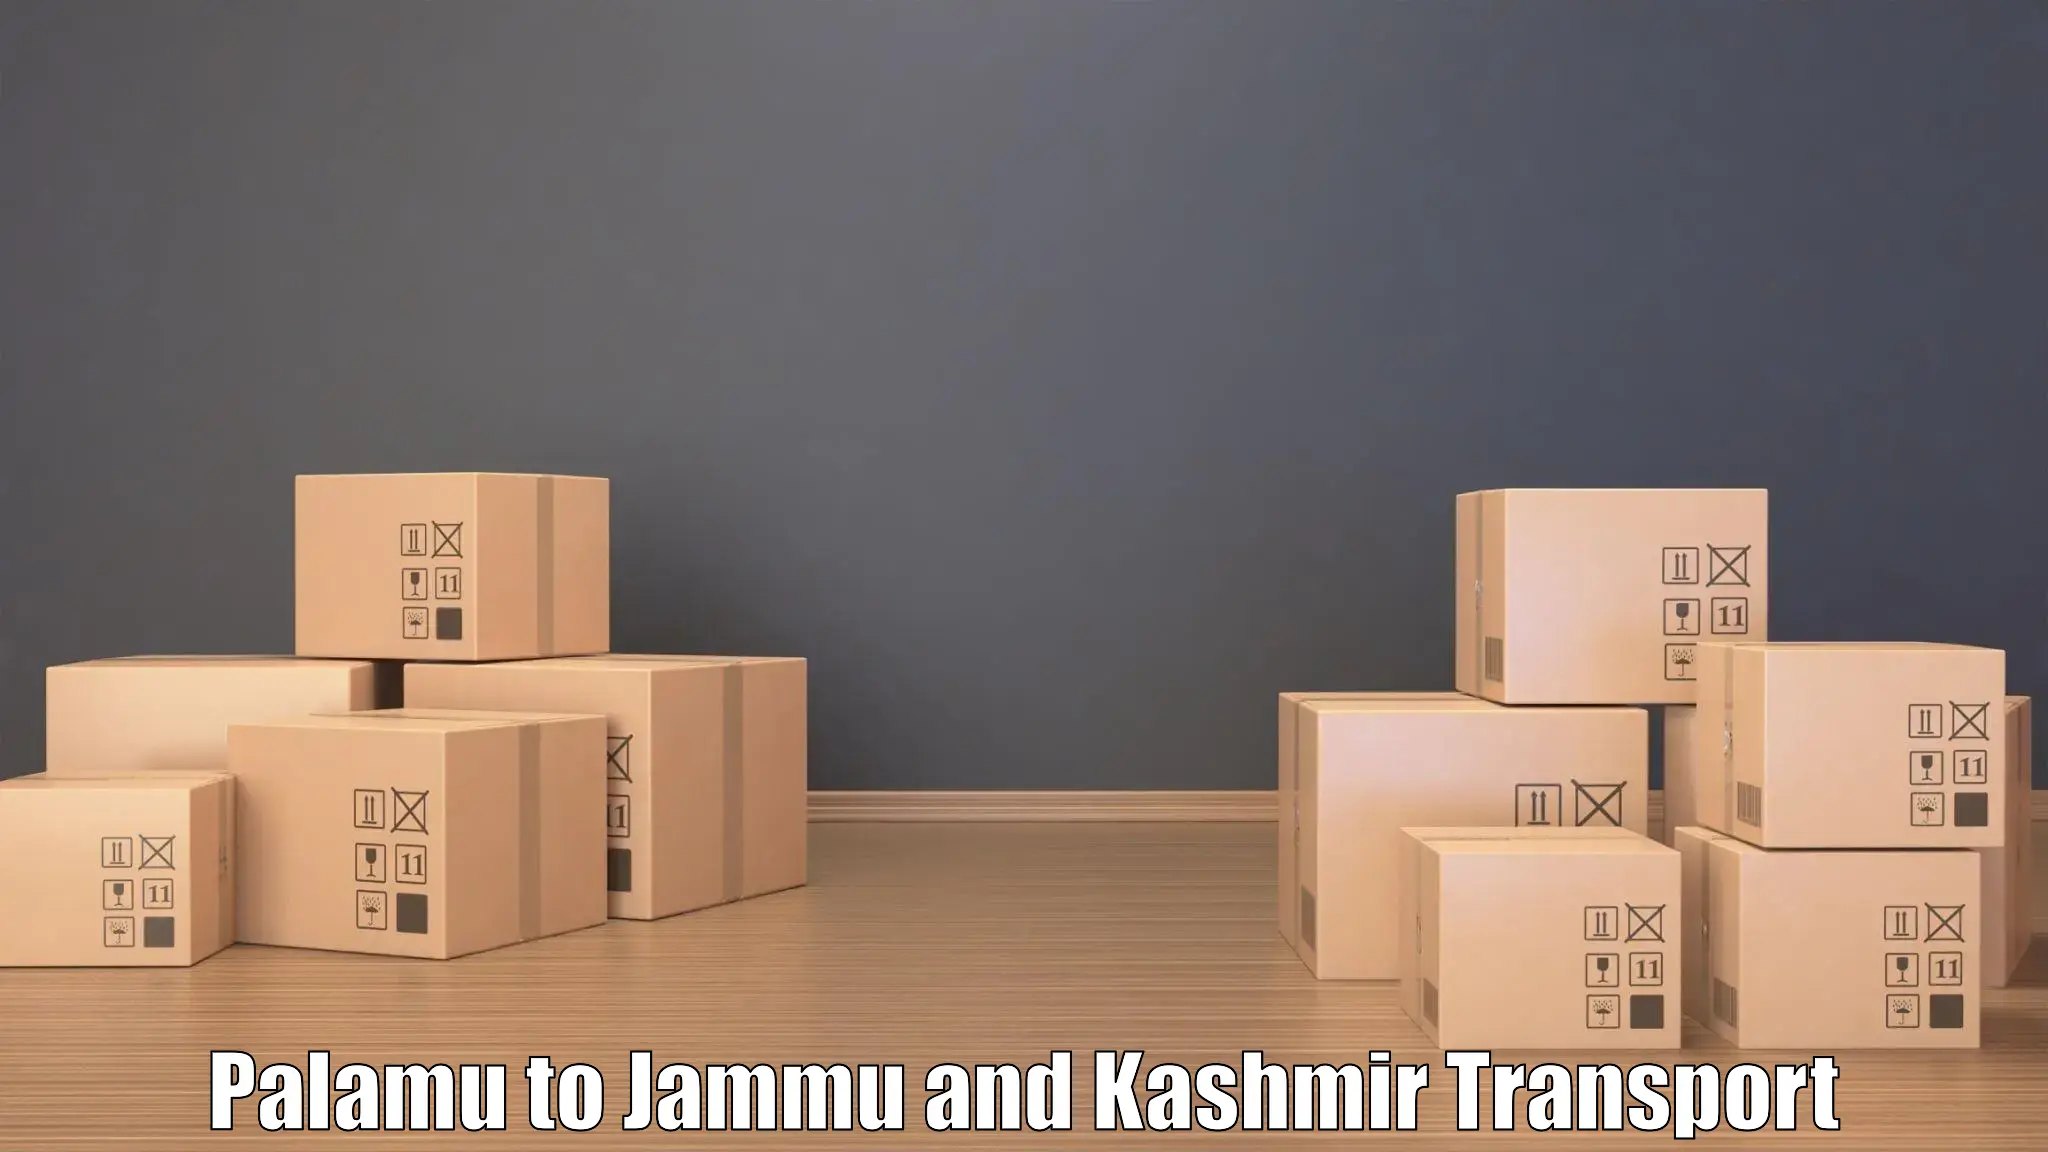 Express transport services Palamu to Jammu and Kashmir